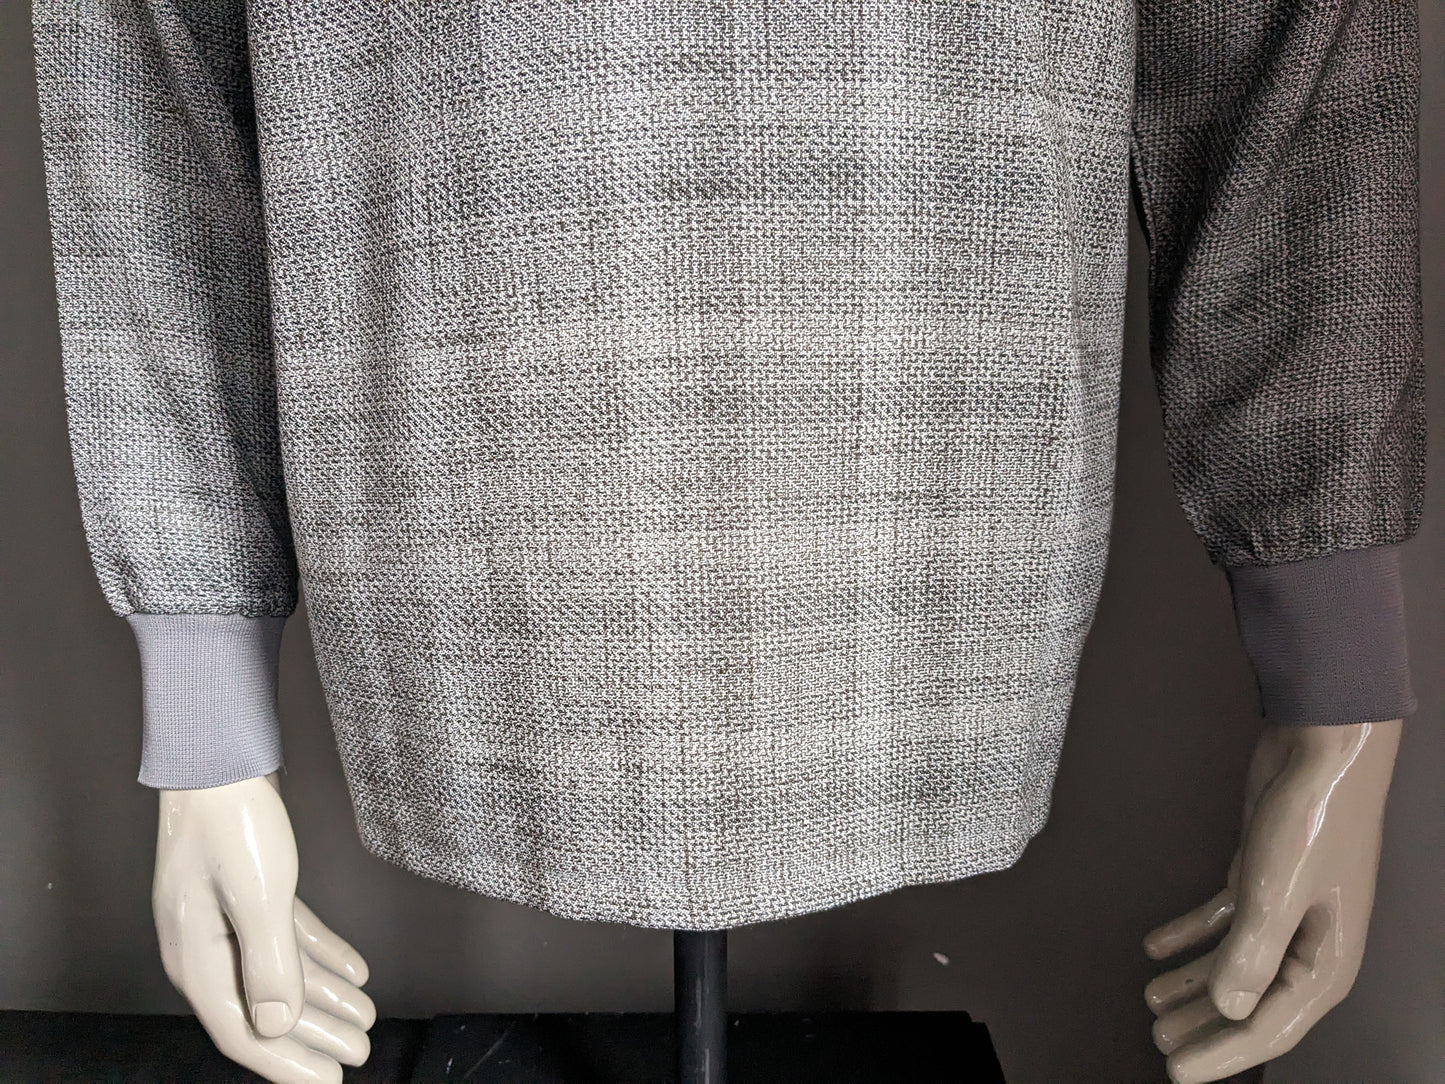 Abbigliamento originale vintage Rainbow Polo maglione. Grigio misto. Taglia L.